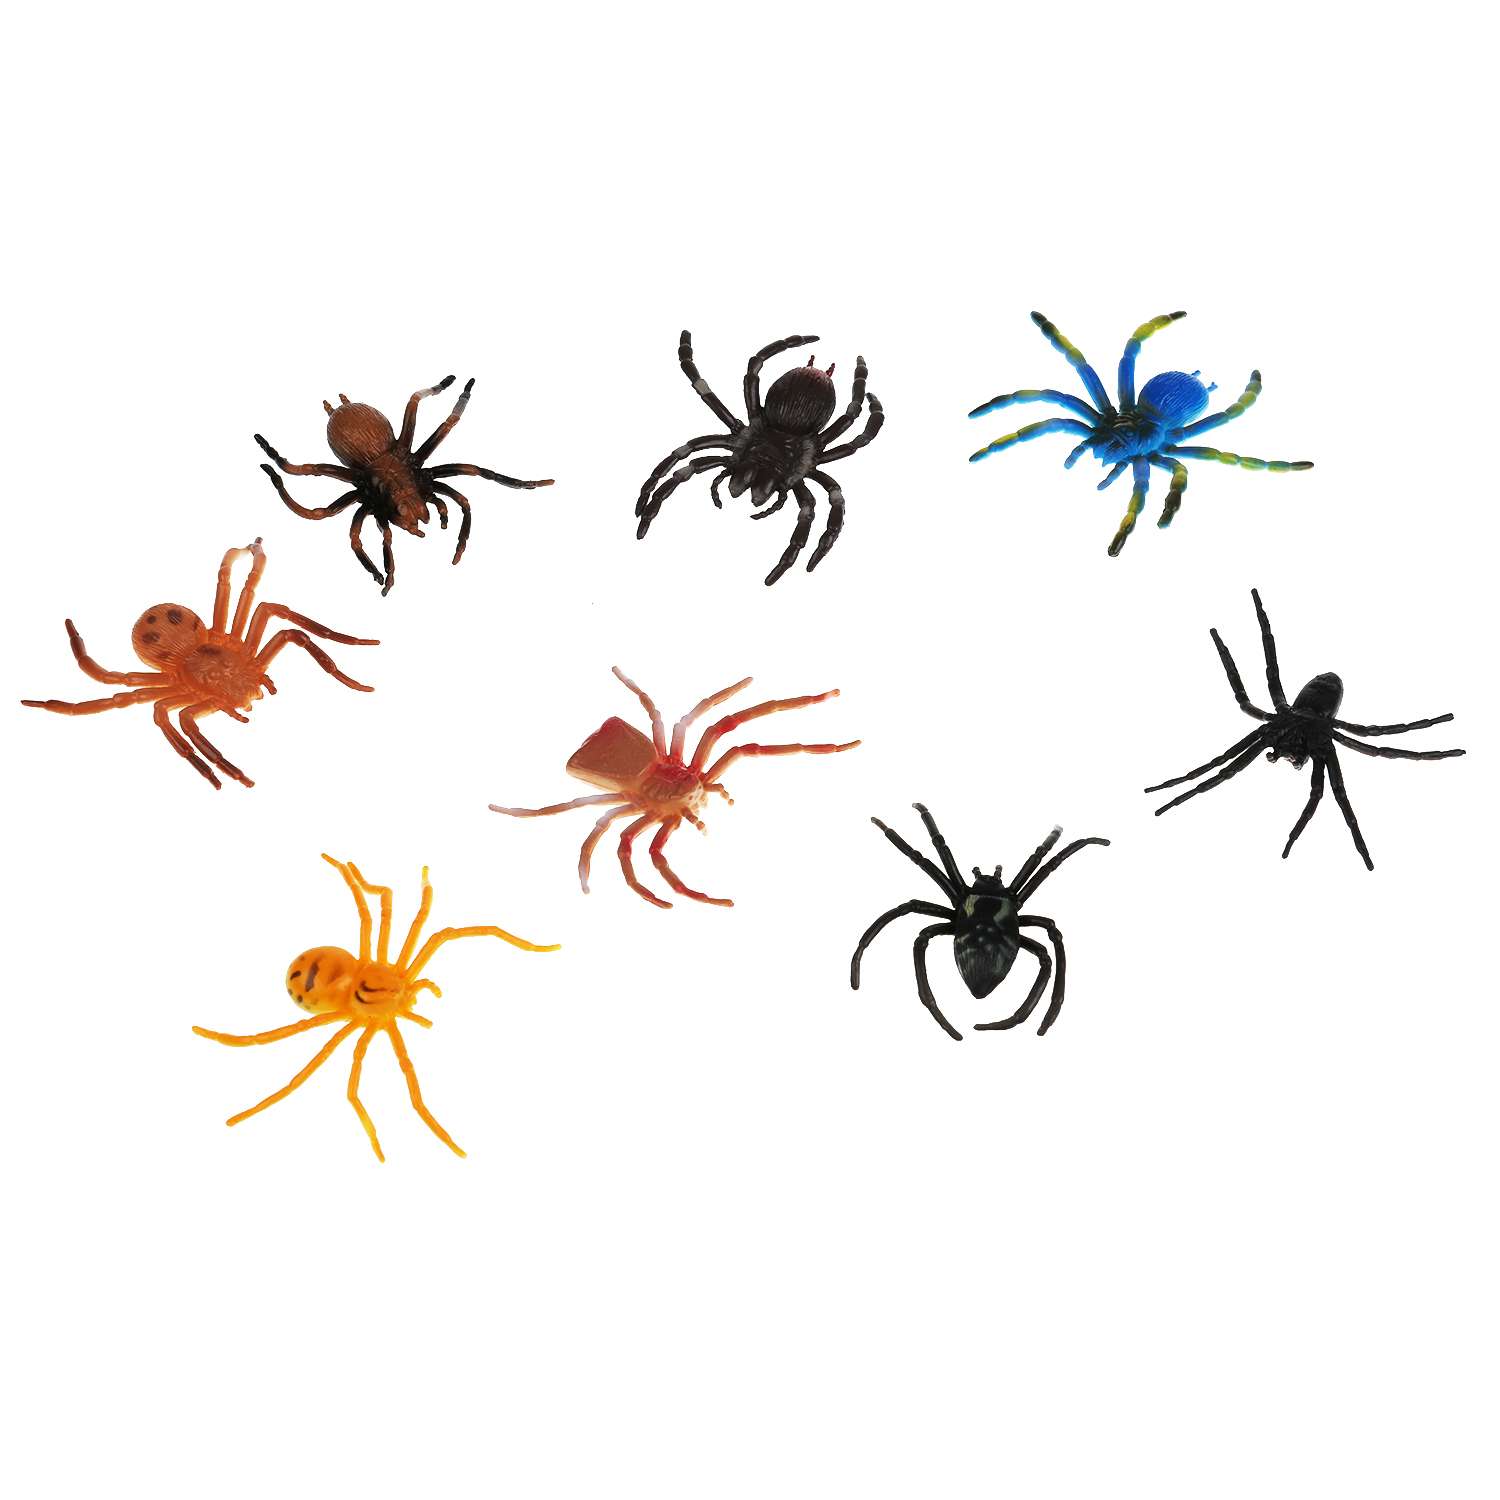 Пауков и жуков 8 штук. Набор пауков резиновых. Игрушечный паучок. Маленькие резиновые паучки. Набор игрушечных пауков.